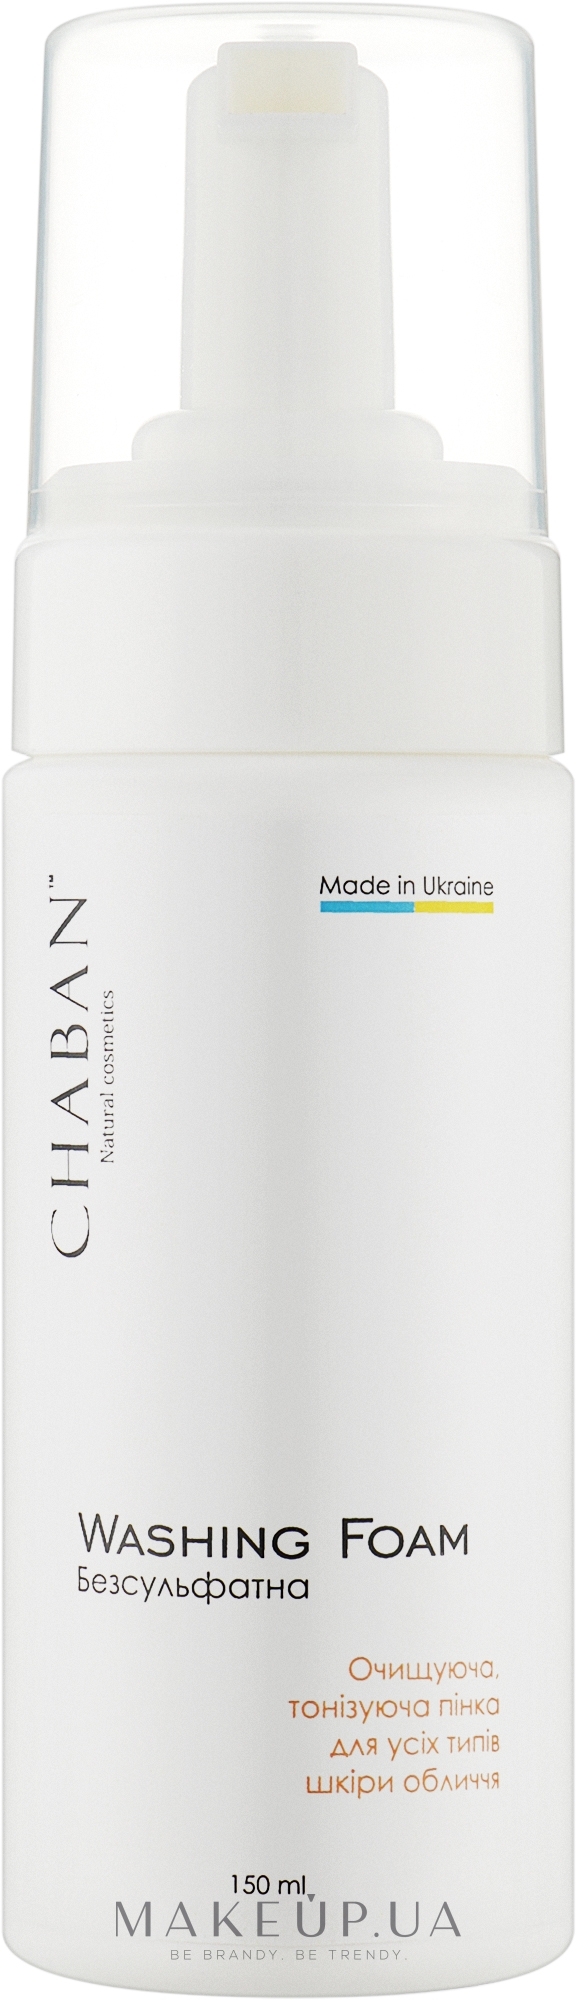 Очищуюча, тонізуюча пінка для усіх типів шкіри обличчя - Chaban Natural Cosmetics Washing Foam — фото 150ml